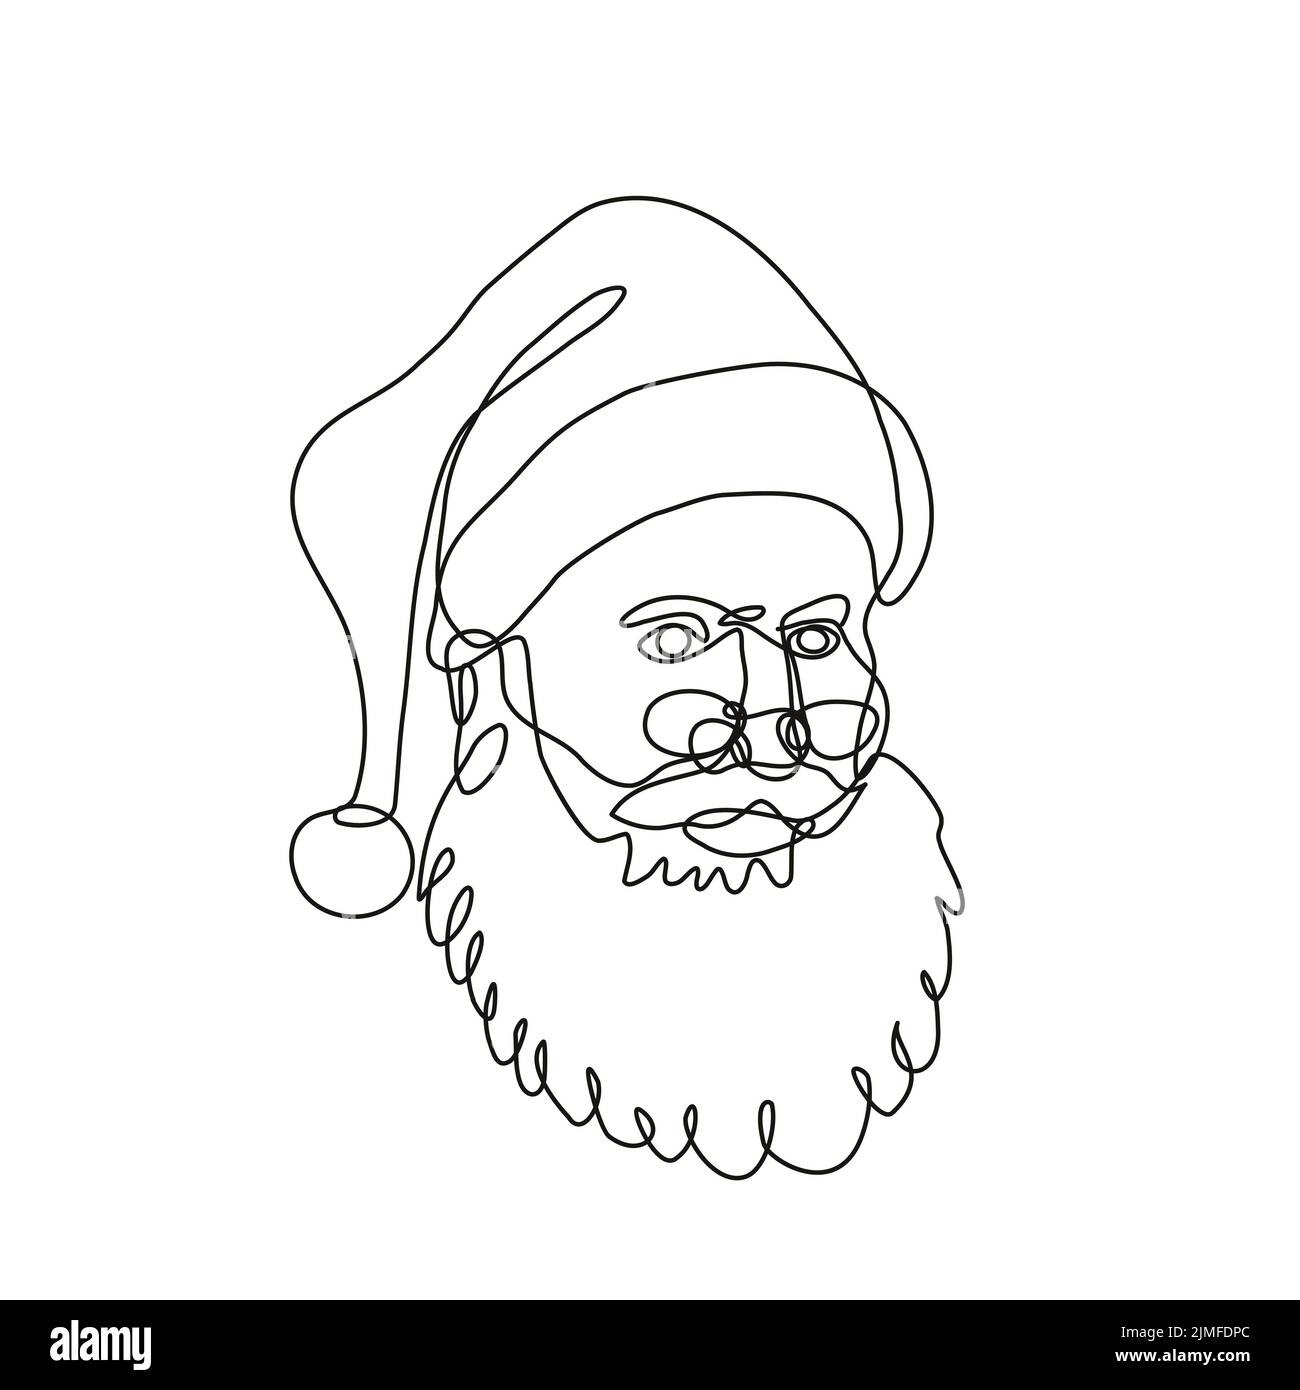 Weihnachtsmann Kris Kringle Weihnachtsmann von der Seite kontinuierliche Linienzeichnung betrachtet Stockfoto